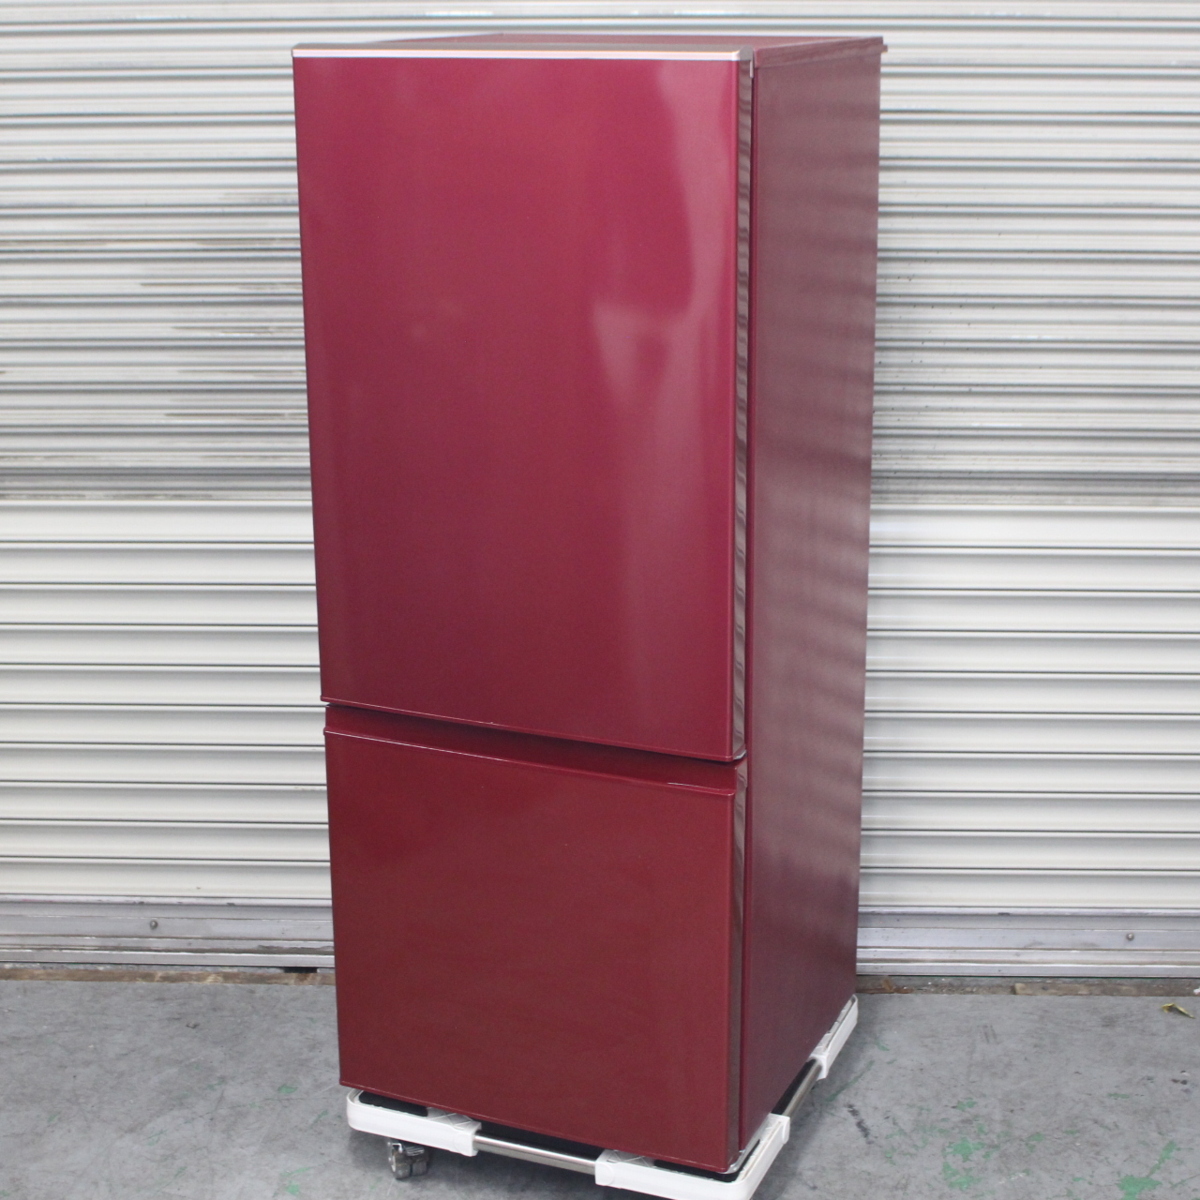 横浜市都筑区にて アクア ノンフロン冷凍冷蔵庫 AQR-BK18H 2019年製 を出張買取させて頂きました。